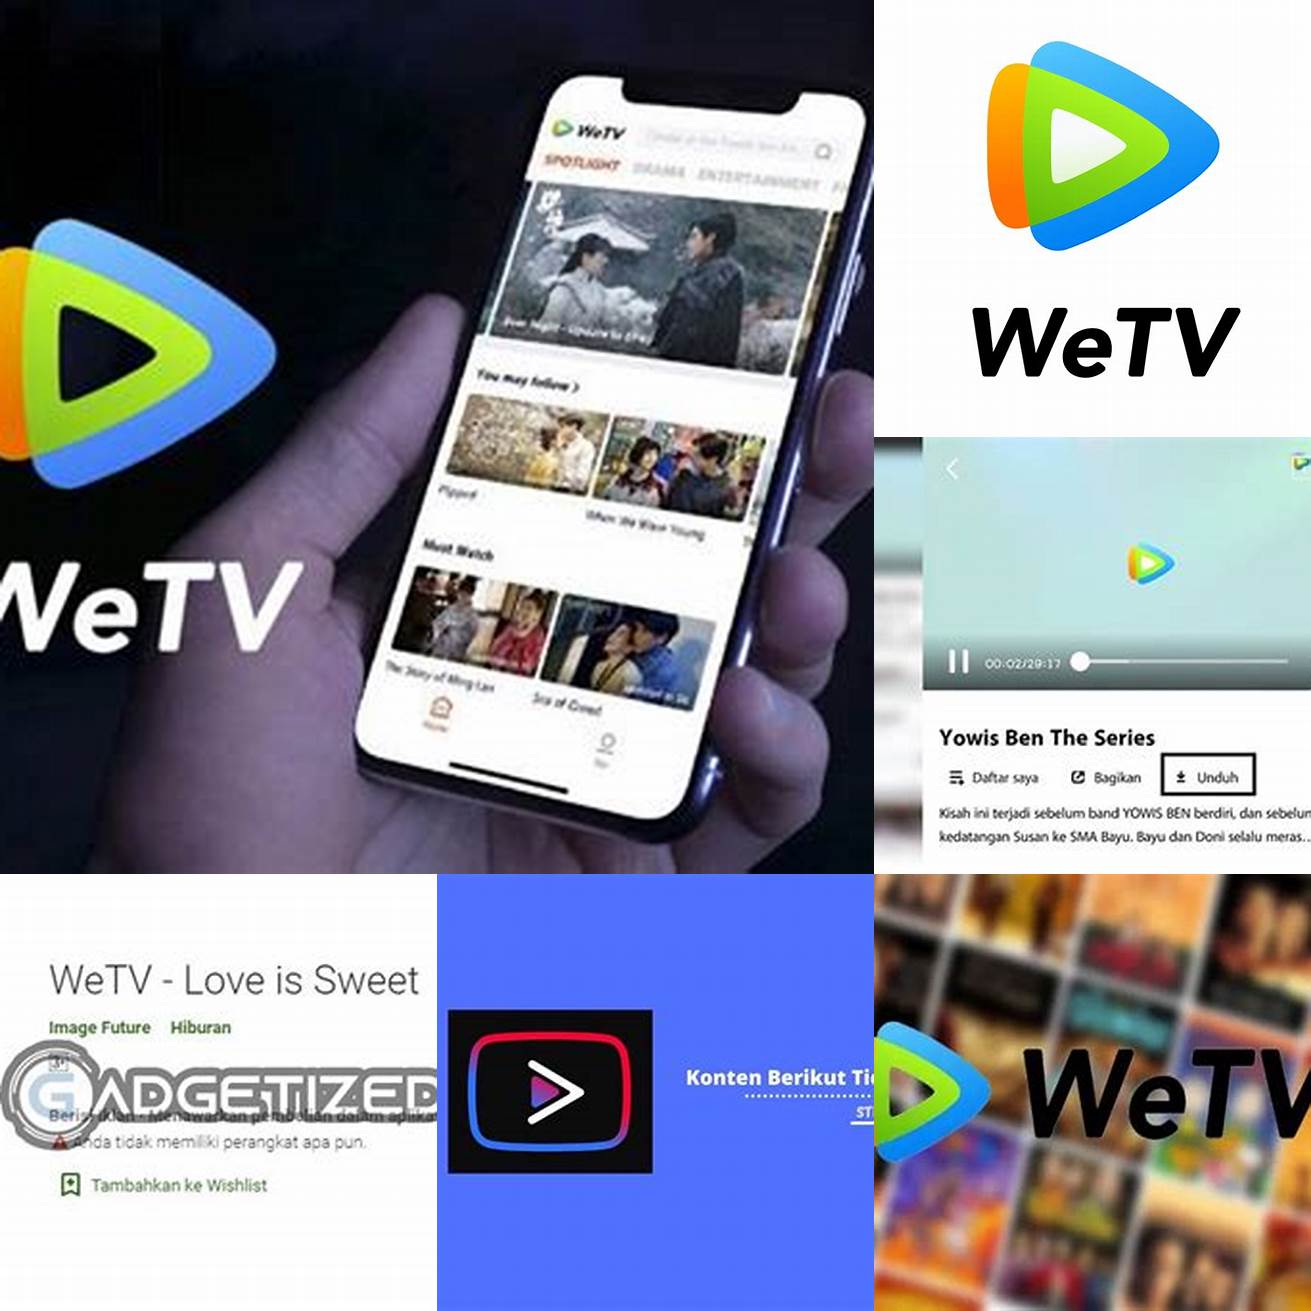 Fitur-fitur yang tidak tersedia di aplikasi WeTV asli